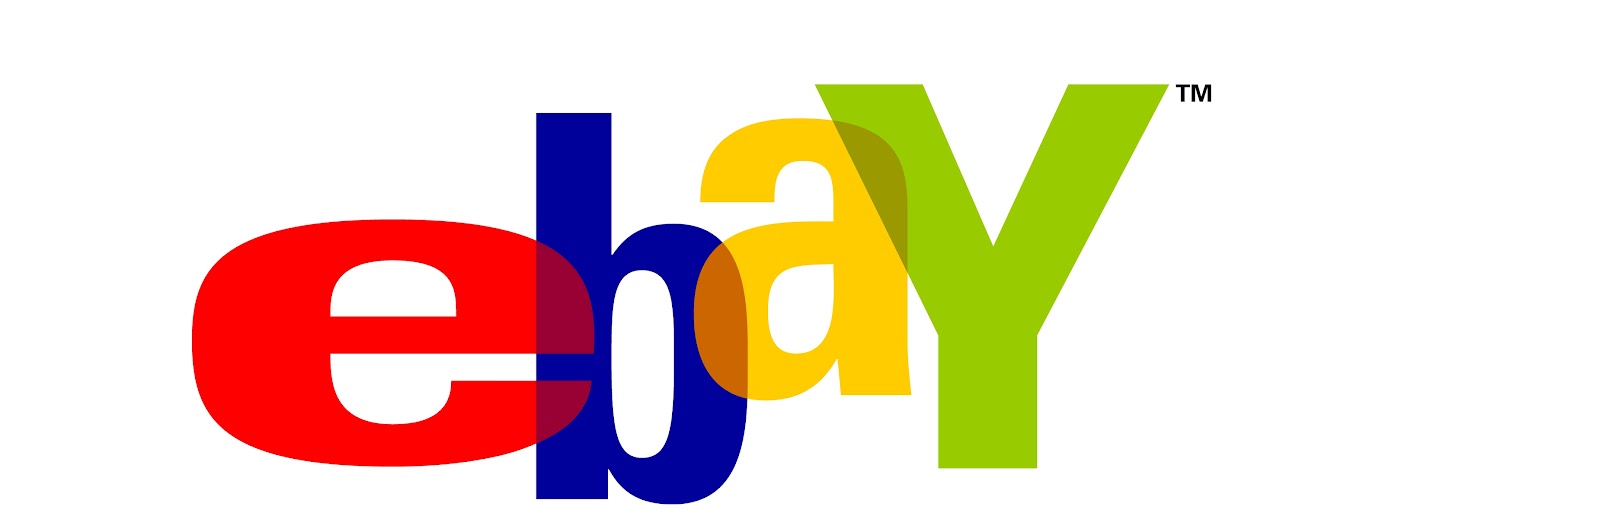 ebay logo vector 02